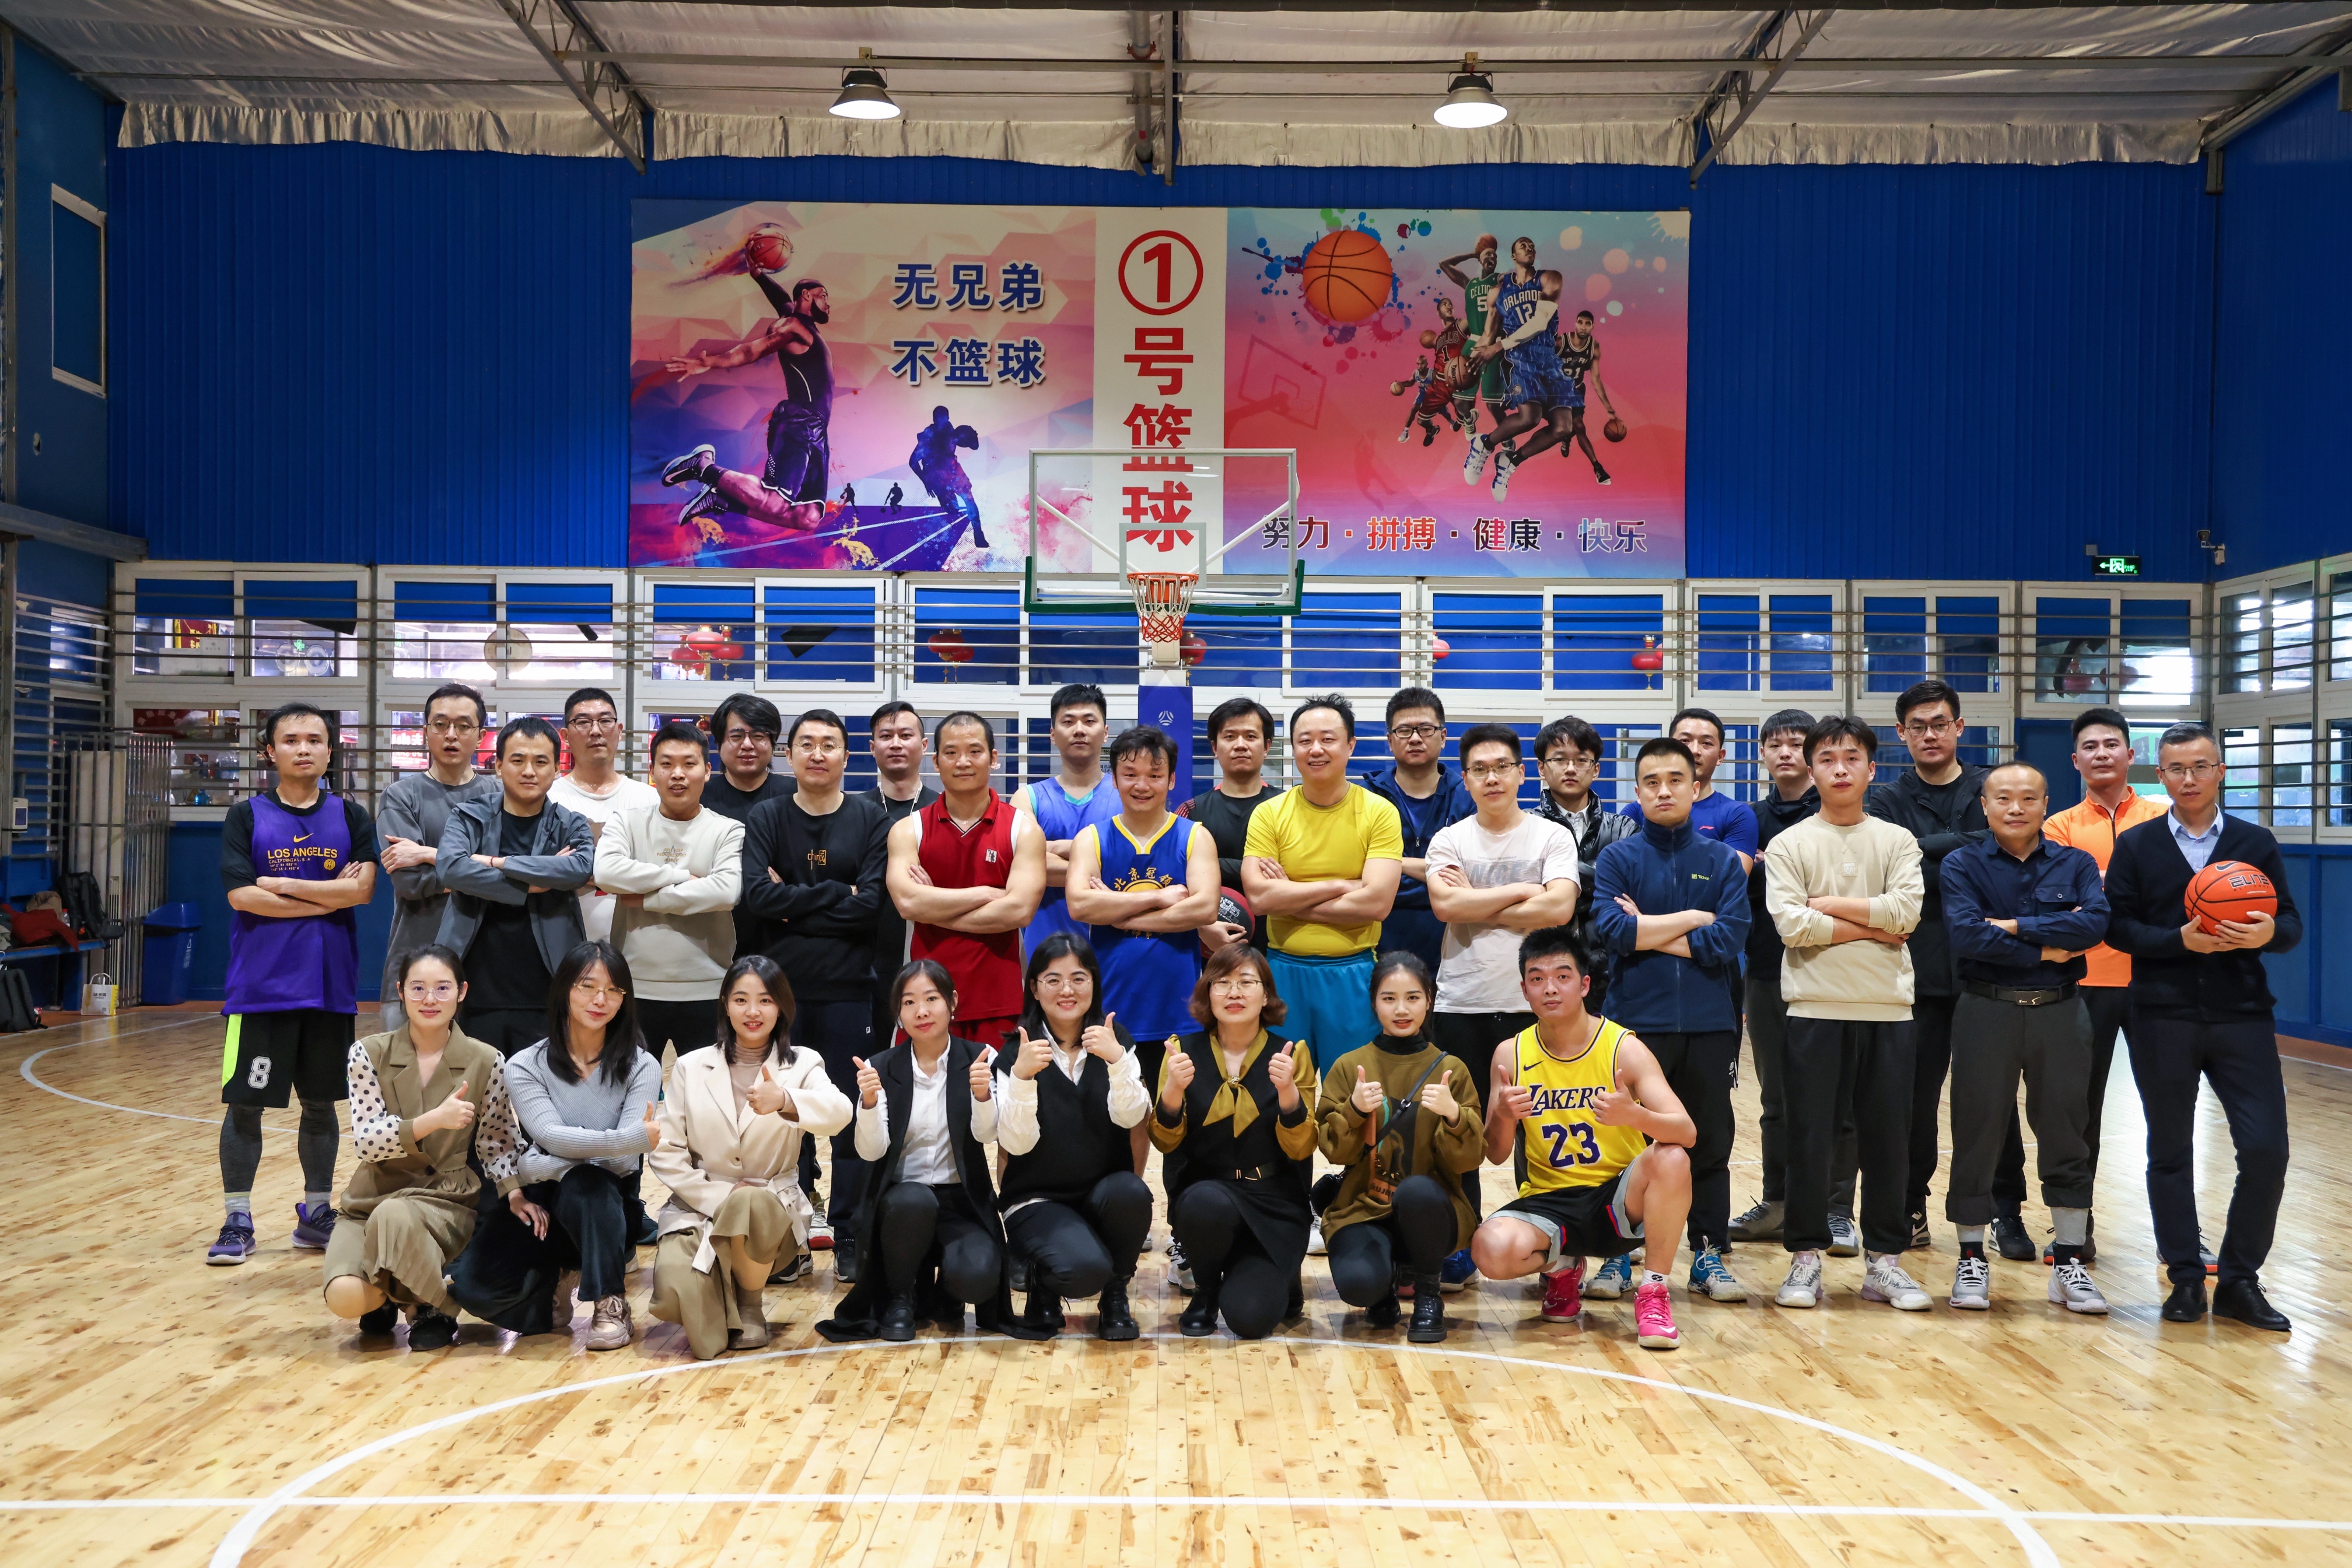 冠领律所篮球队与清华法硕校友篮球队组织友谊赛